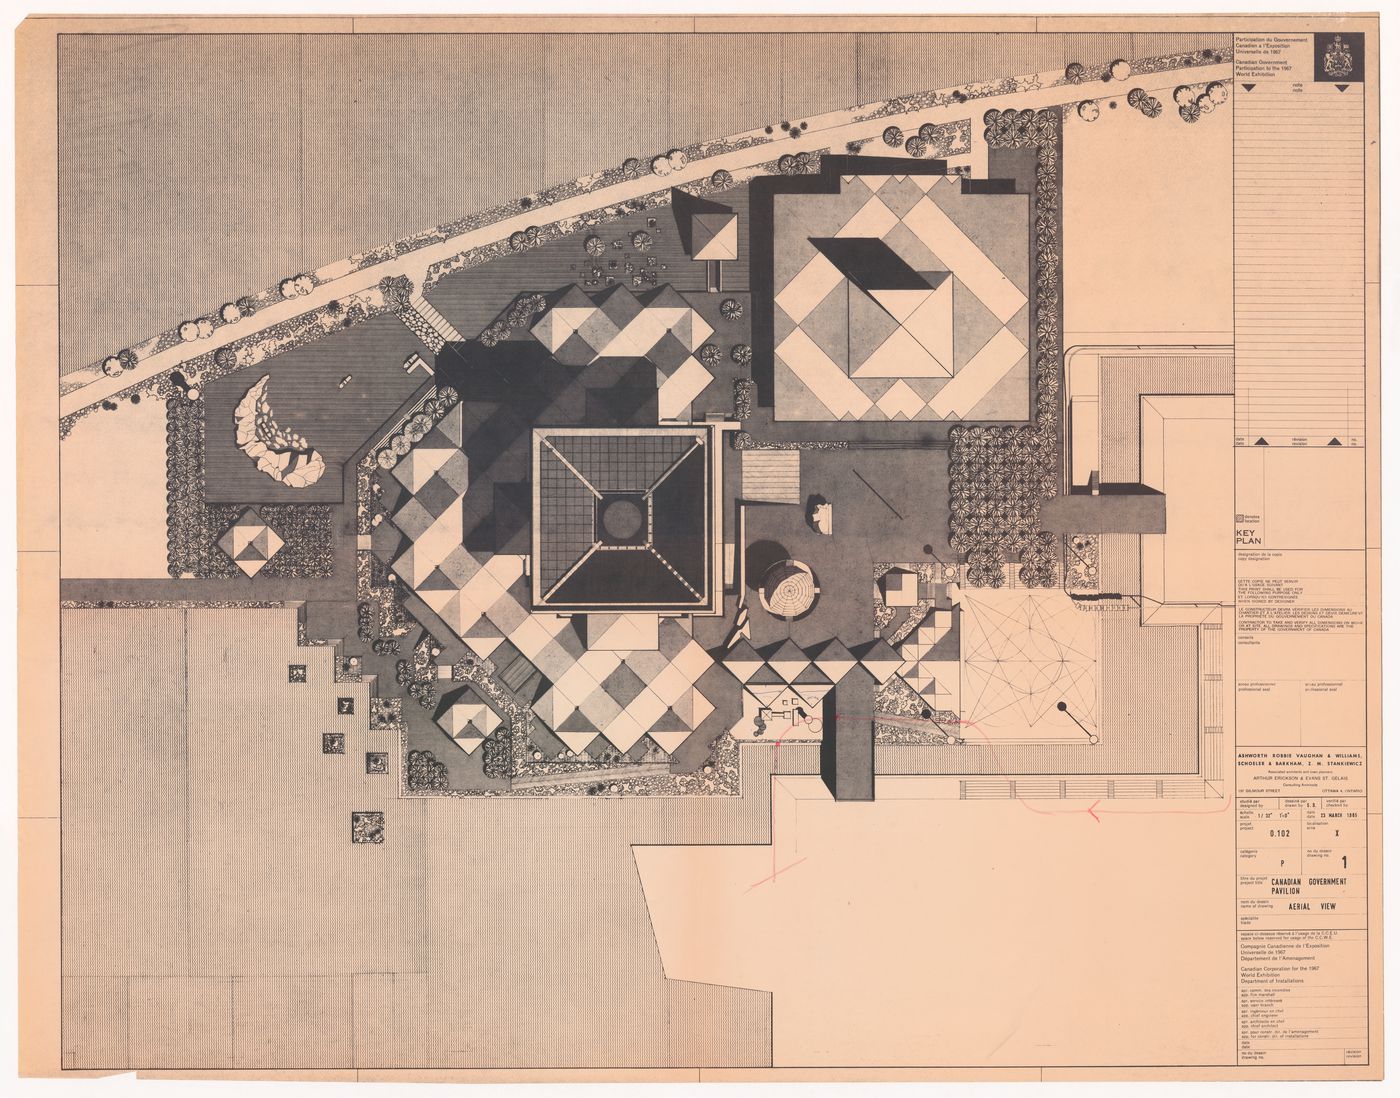 Site plan for Canadian Federal Pavilion, Expo '67, Montréal, Québec